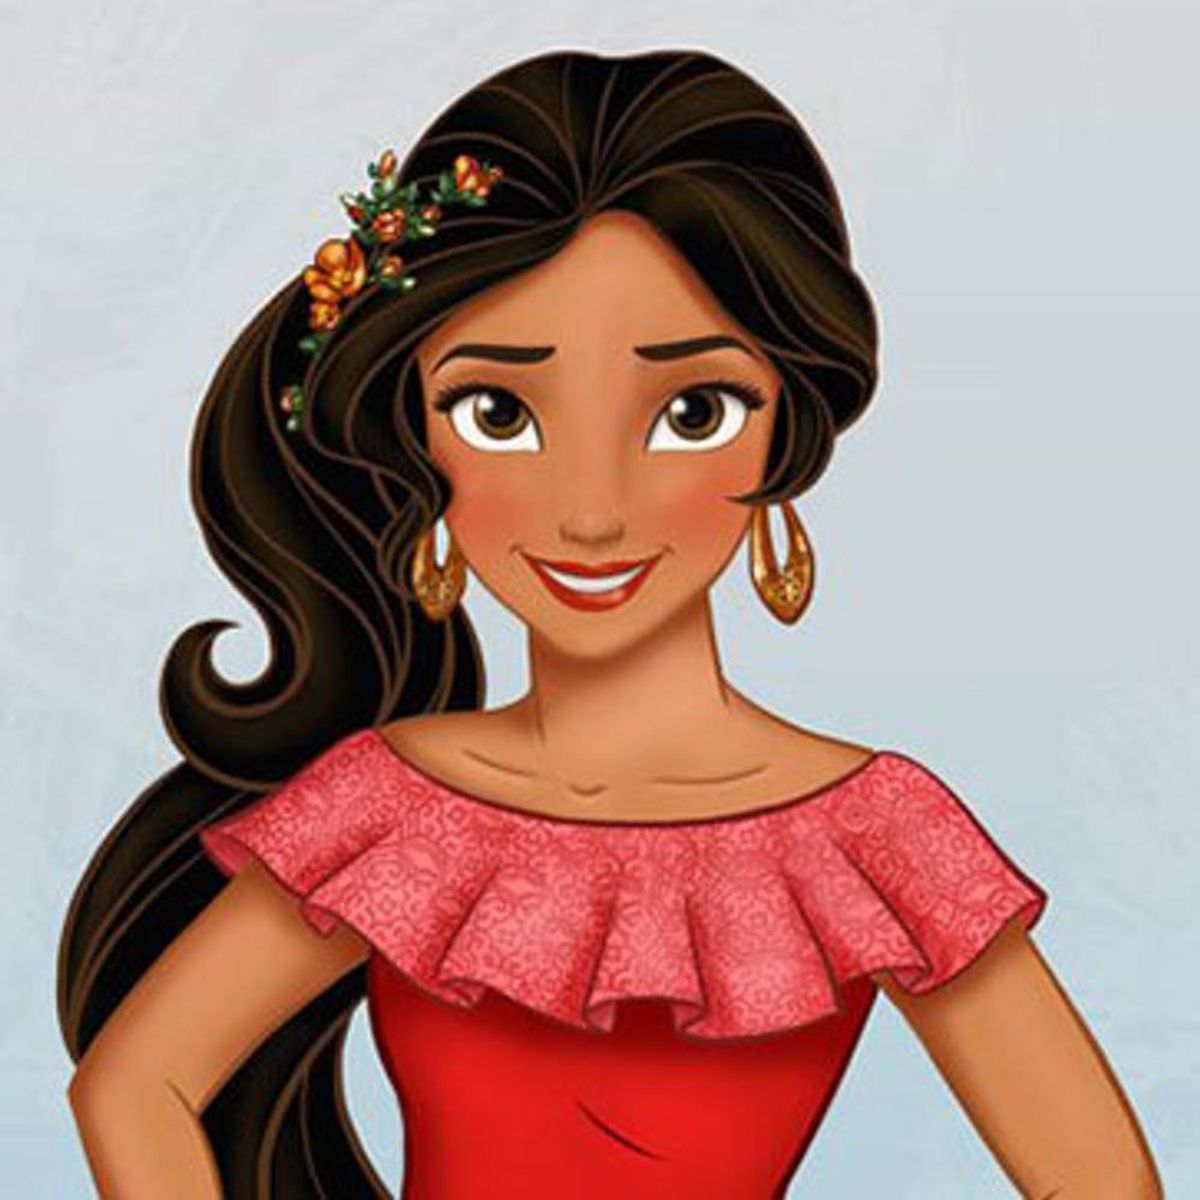 Meet Disney’s Newest (+ First Latina!) Princess